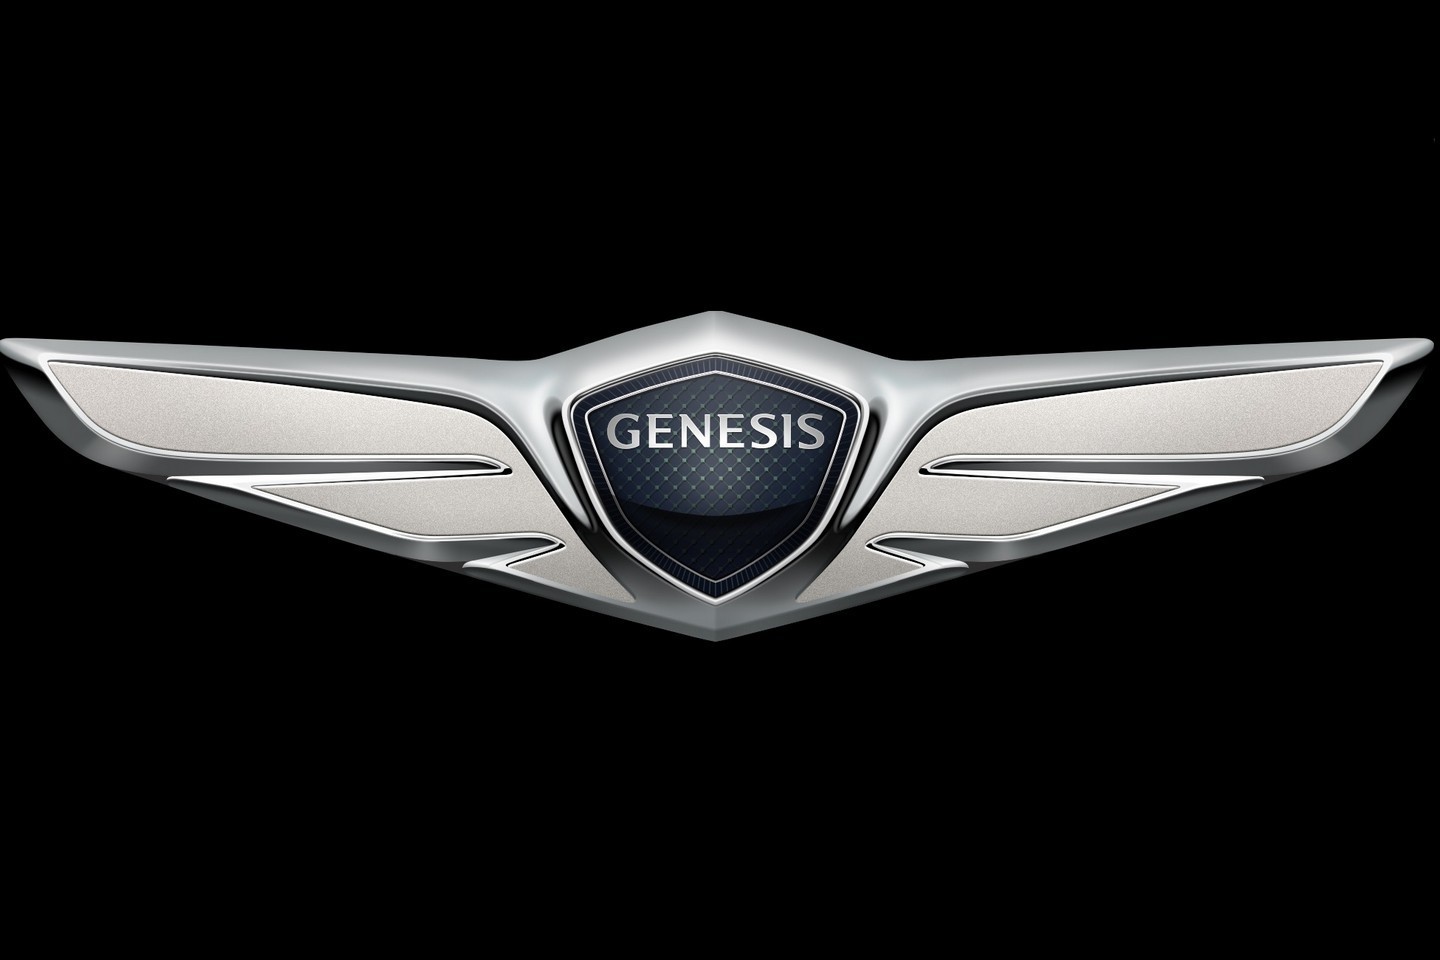 Genesis deja de ser un modelo para convertirse en la marca de lujo de Hyundai